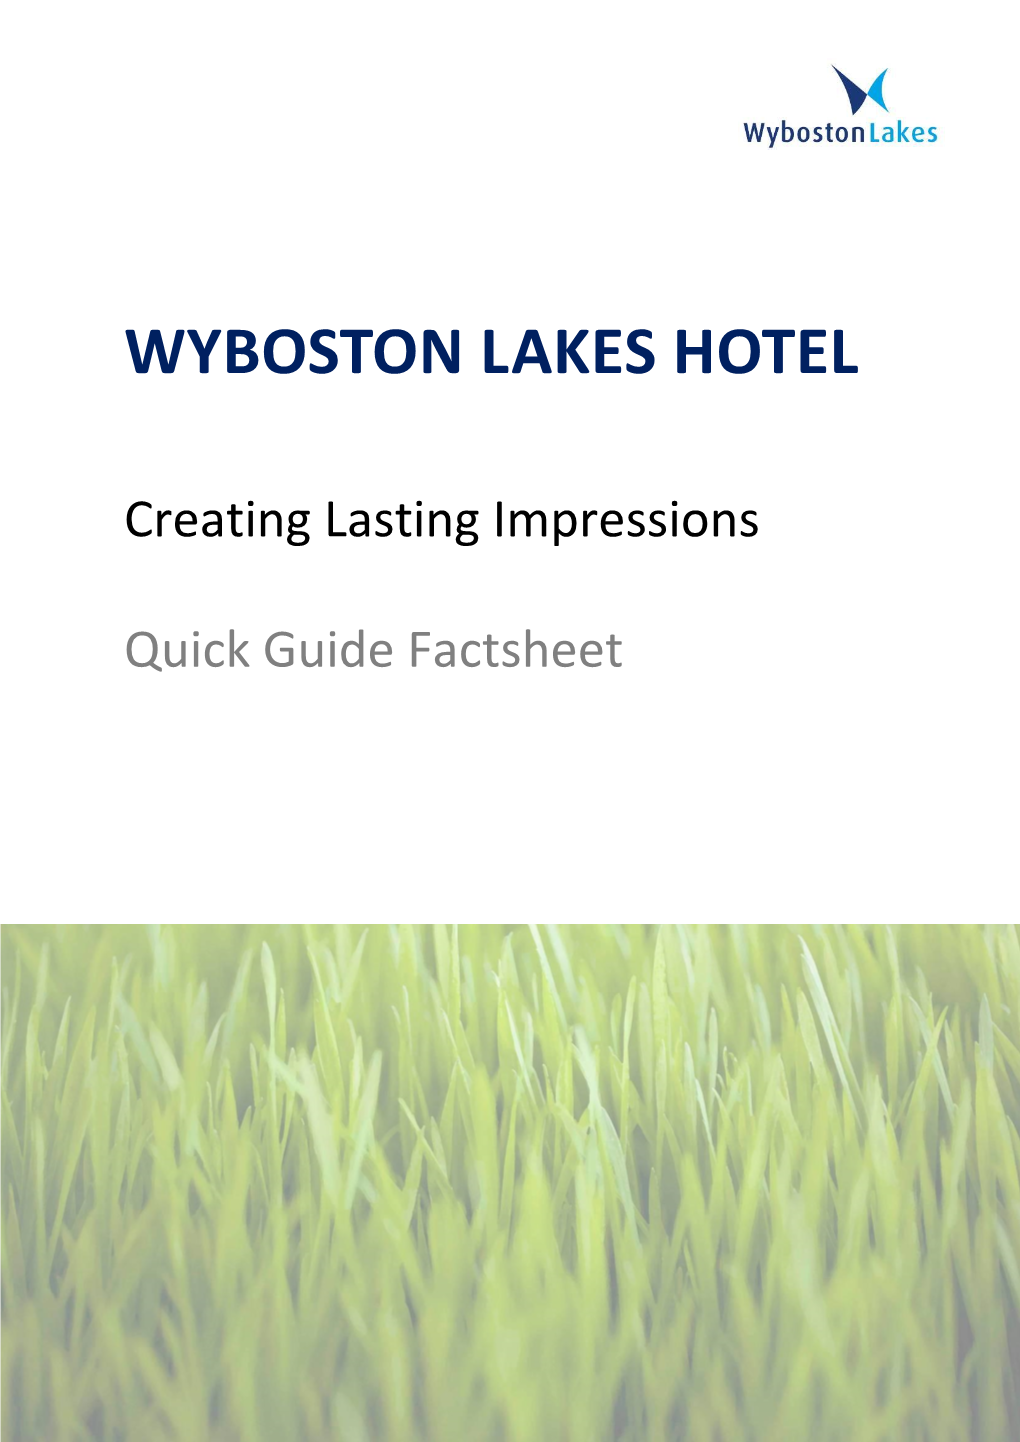 Wyboston Lakes Hotel